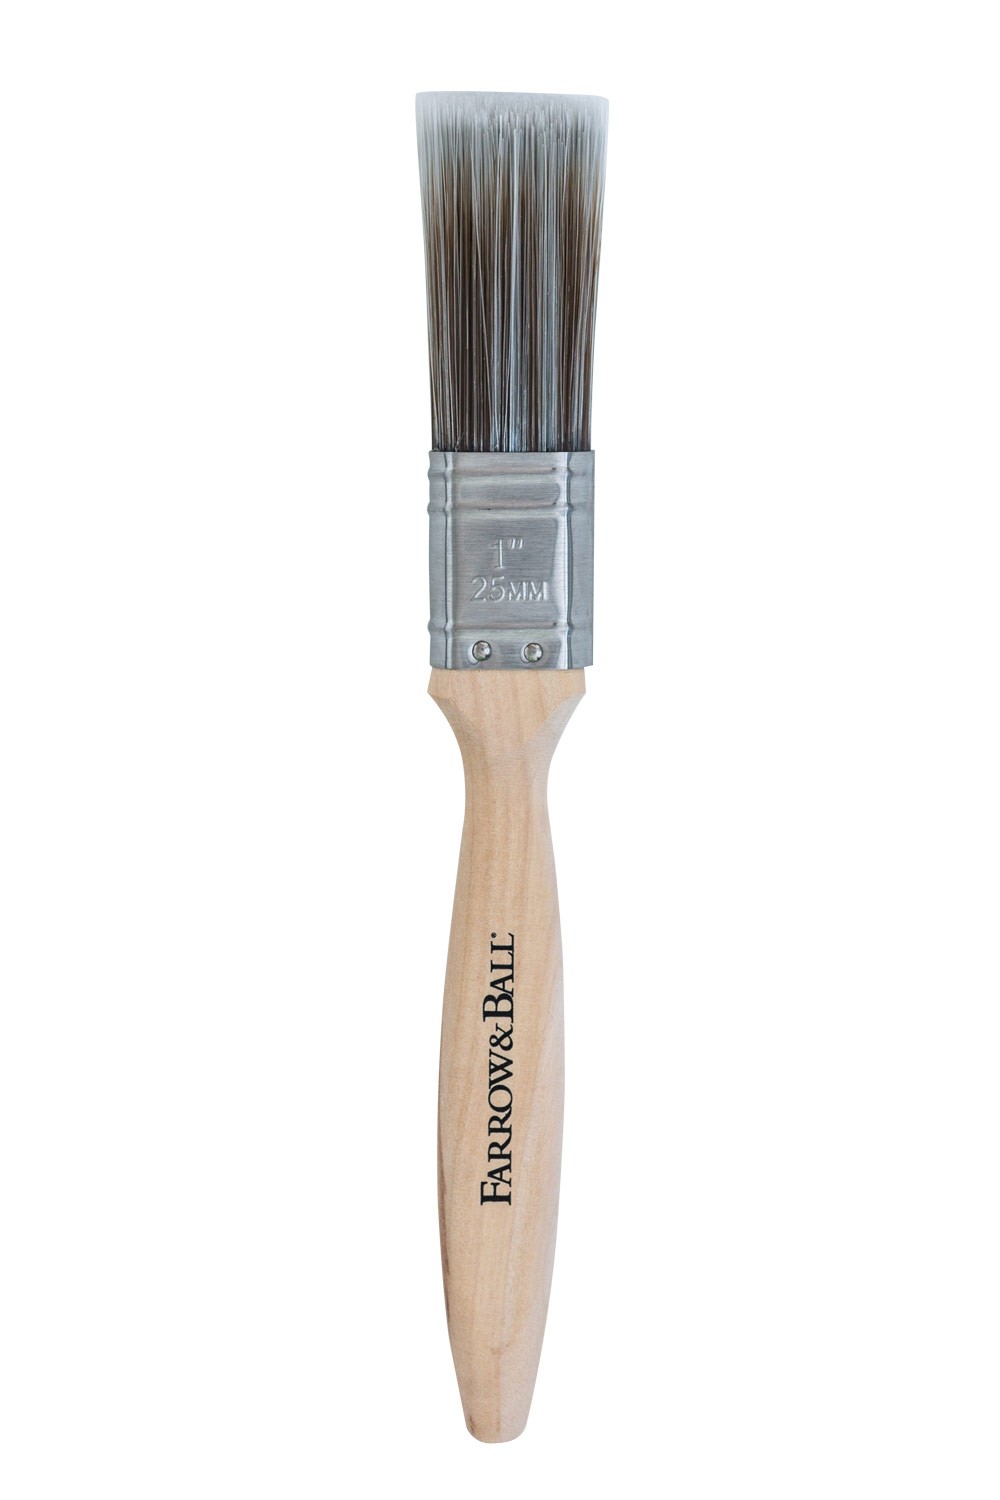 1-inch-paint-brush